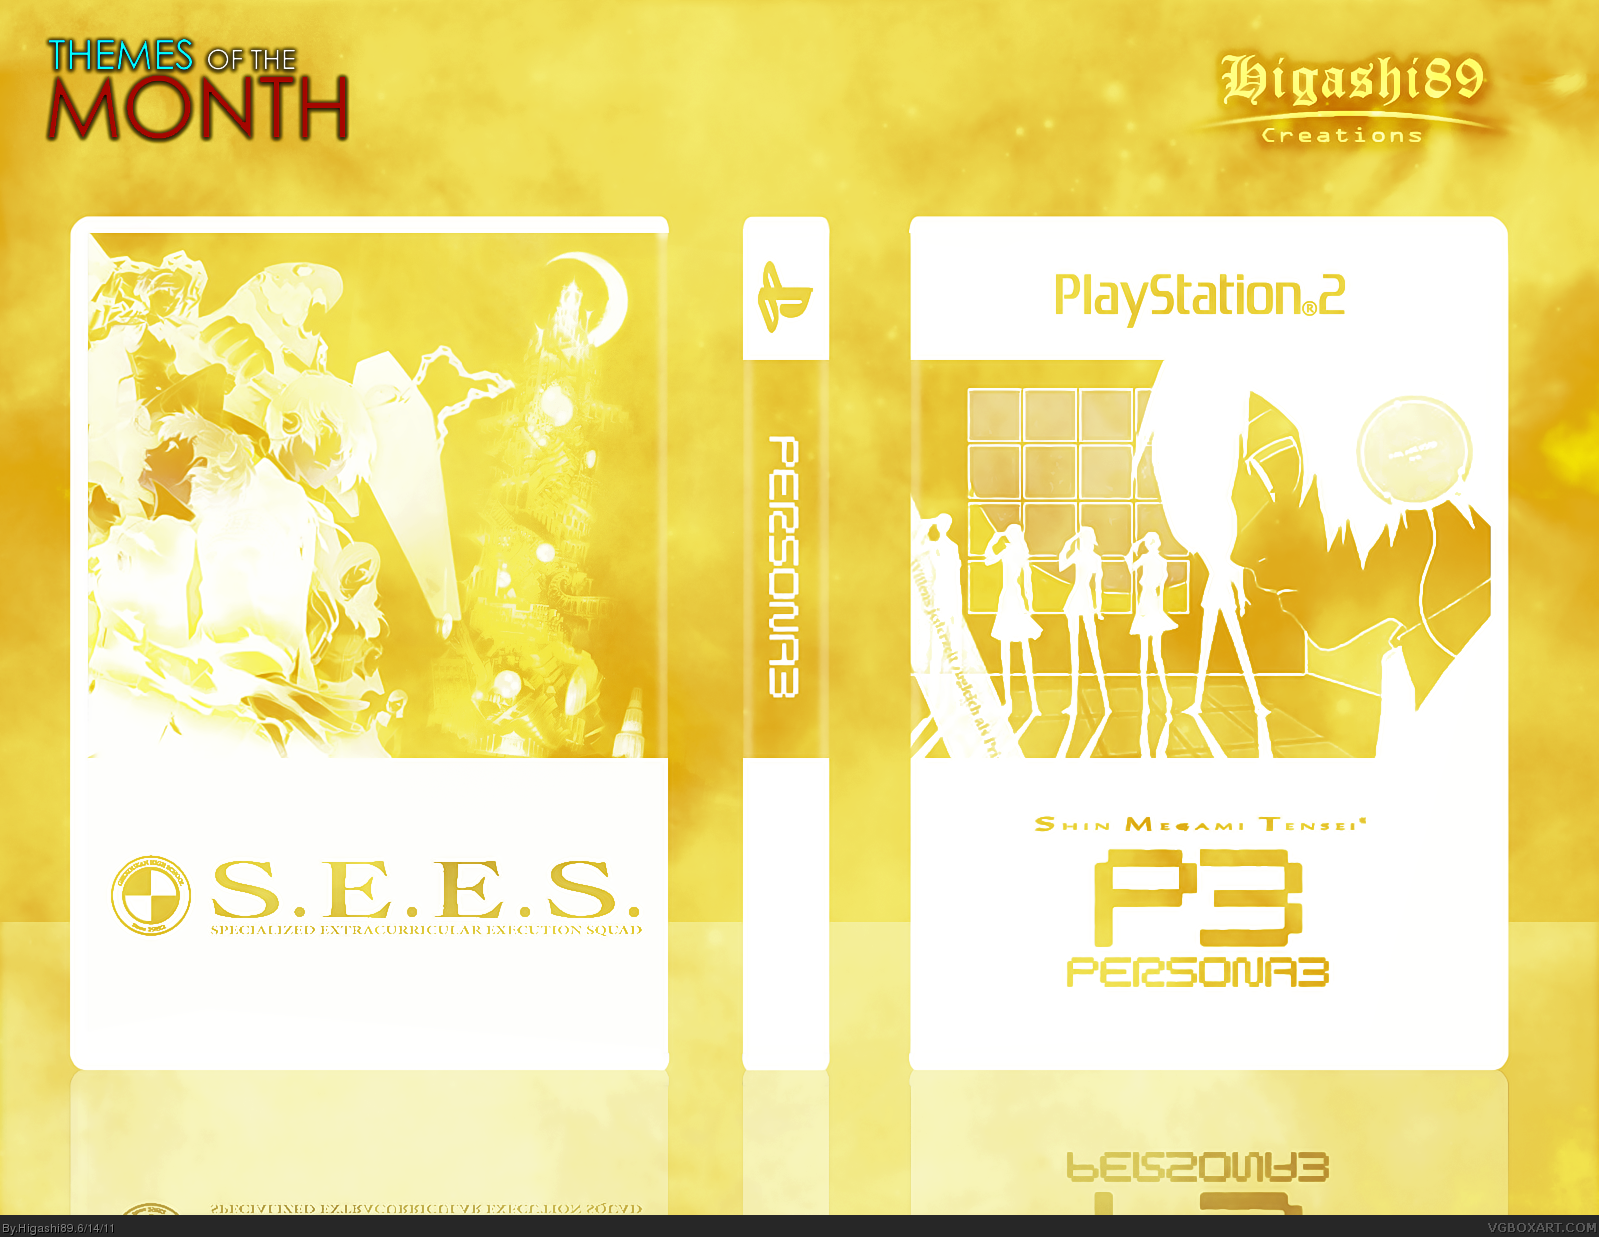 Persona 3 box cover